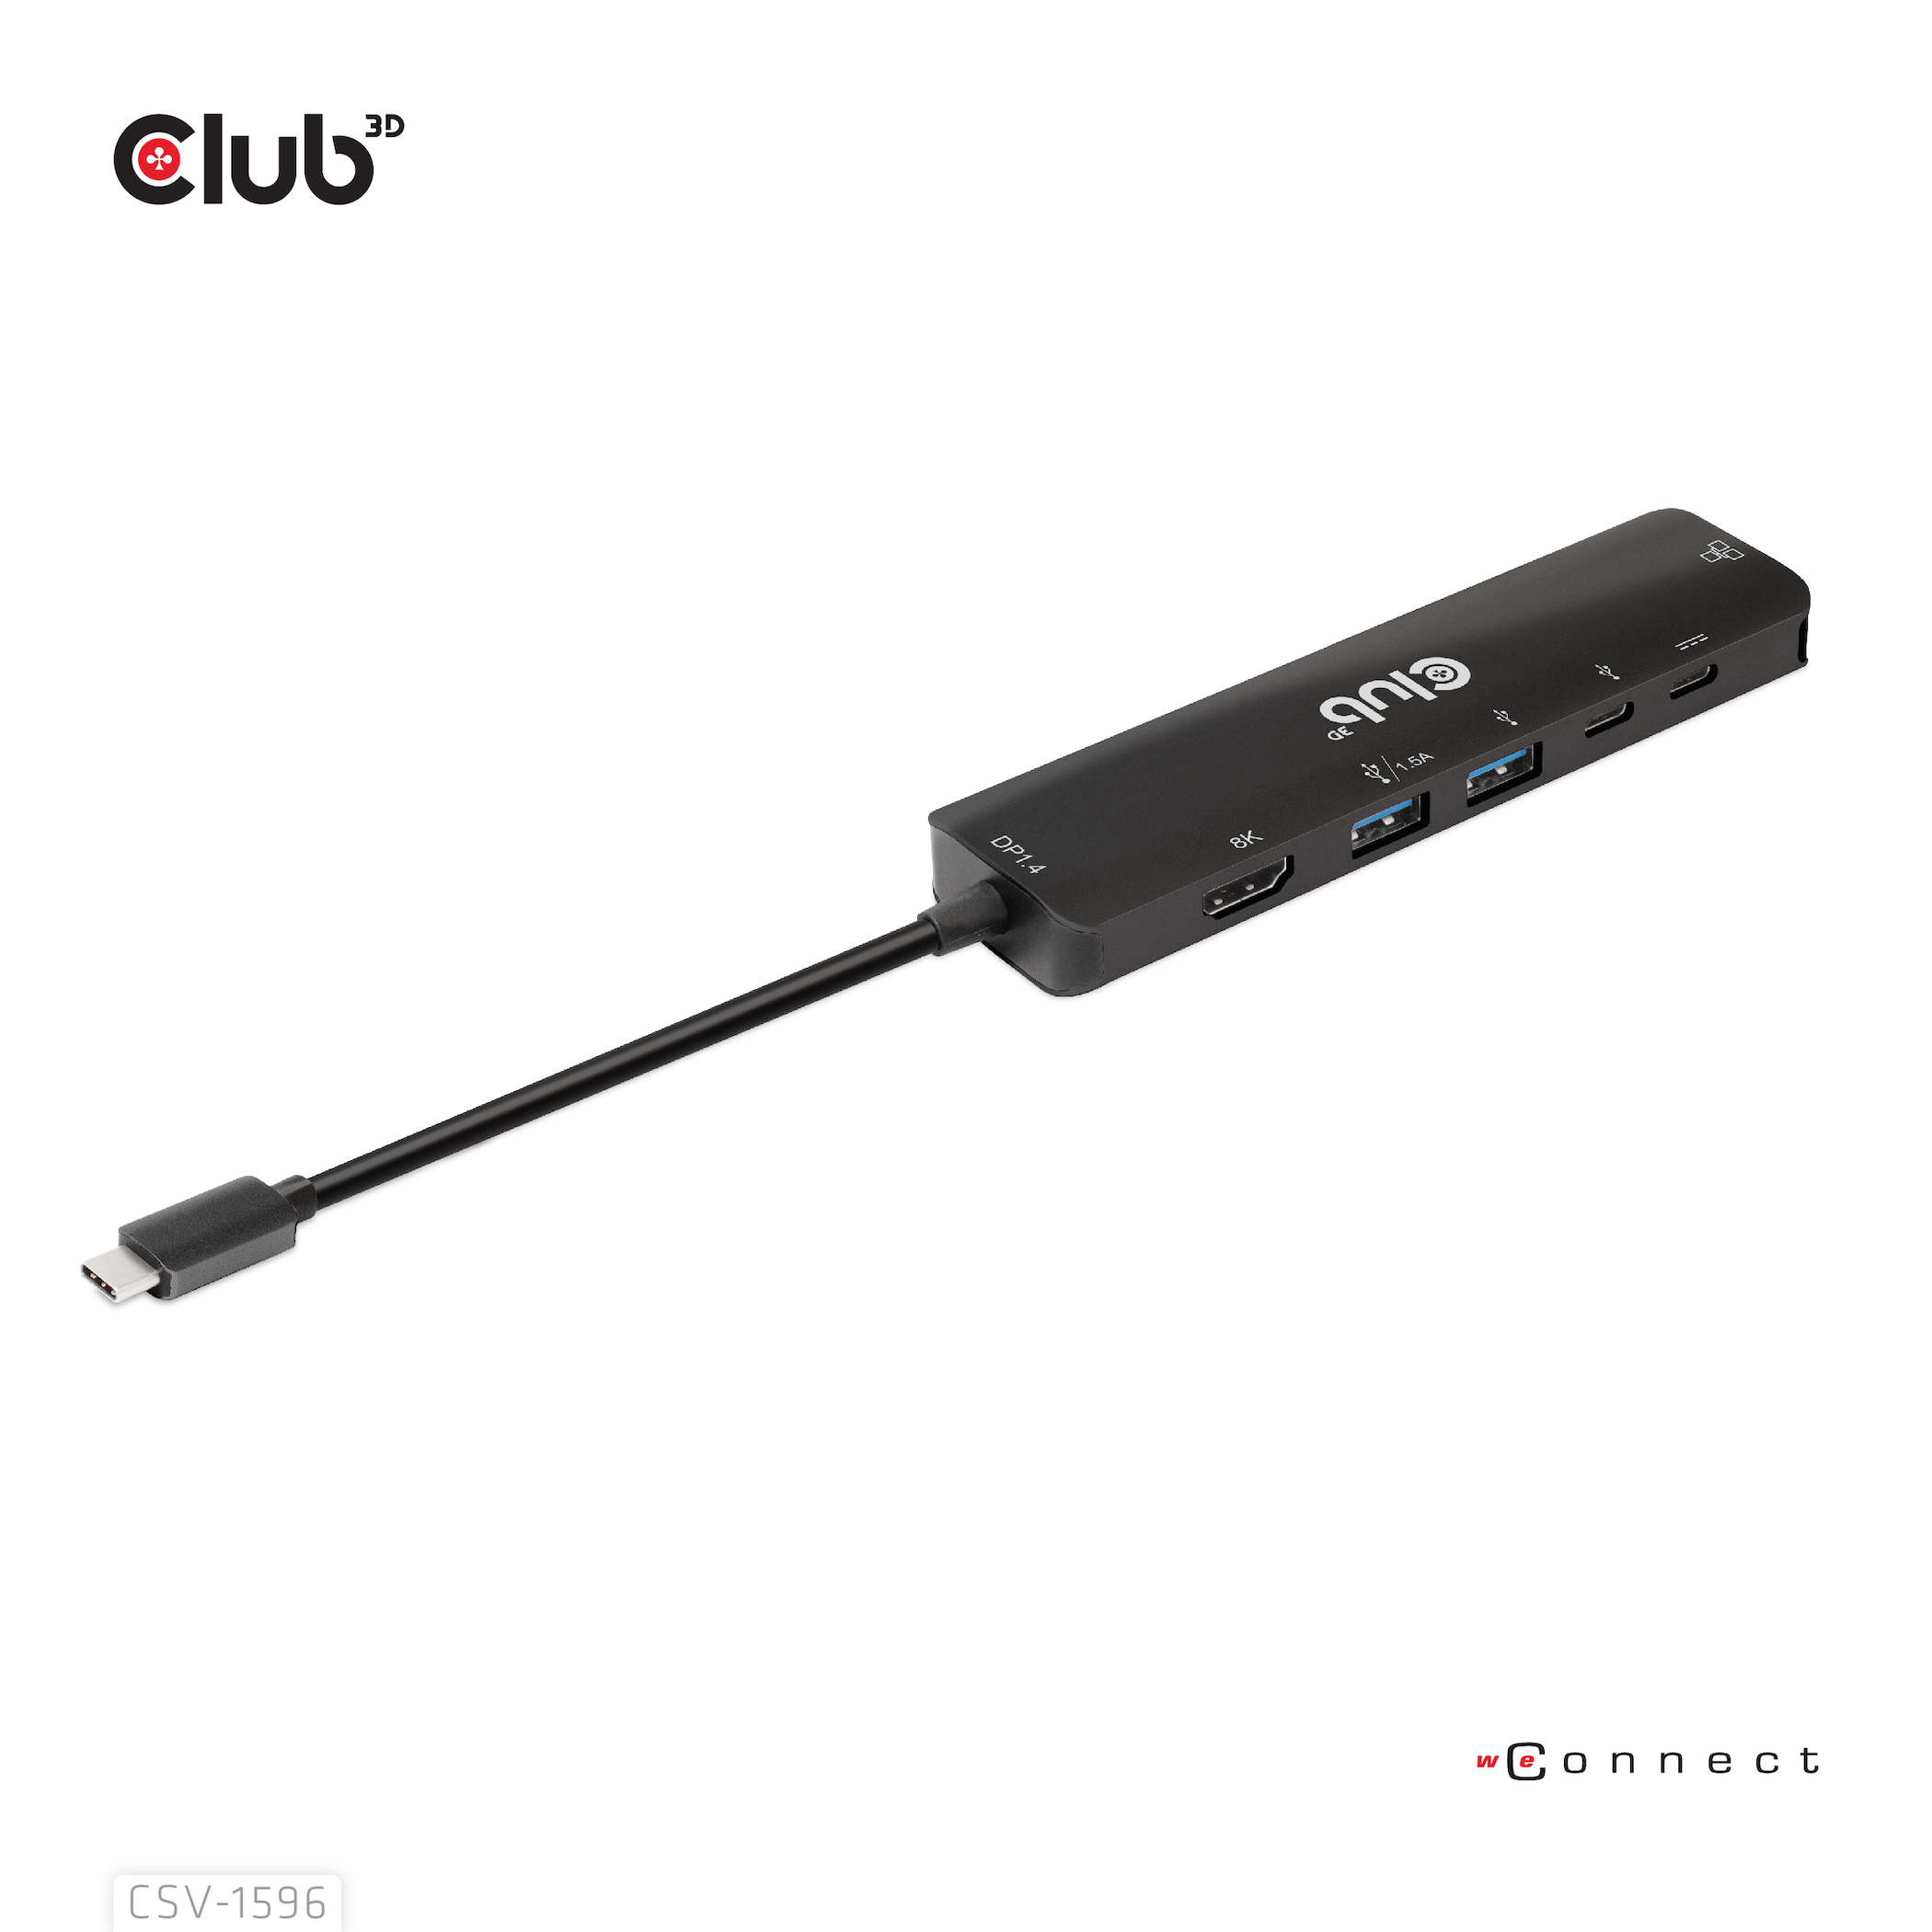 Club 3D Dockingstation - USB-C 3.1 Gen 1 - HDMI